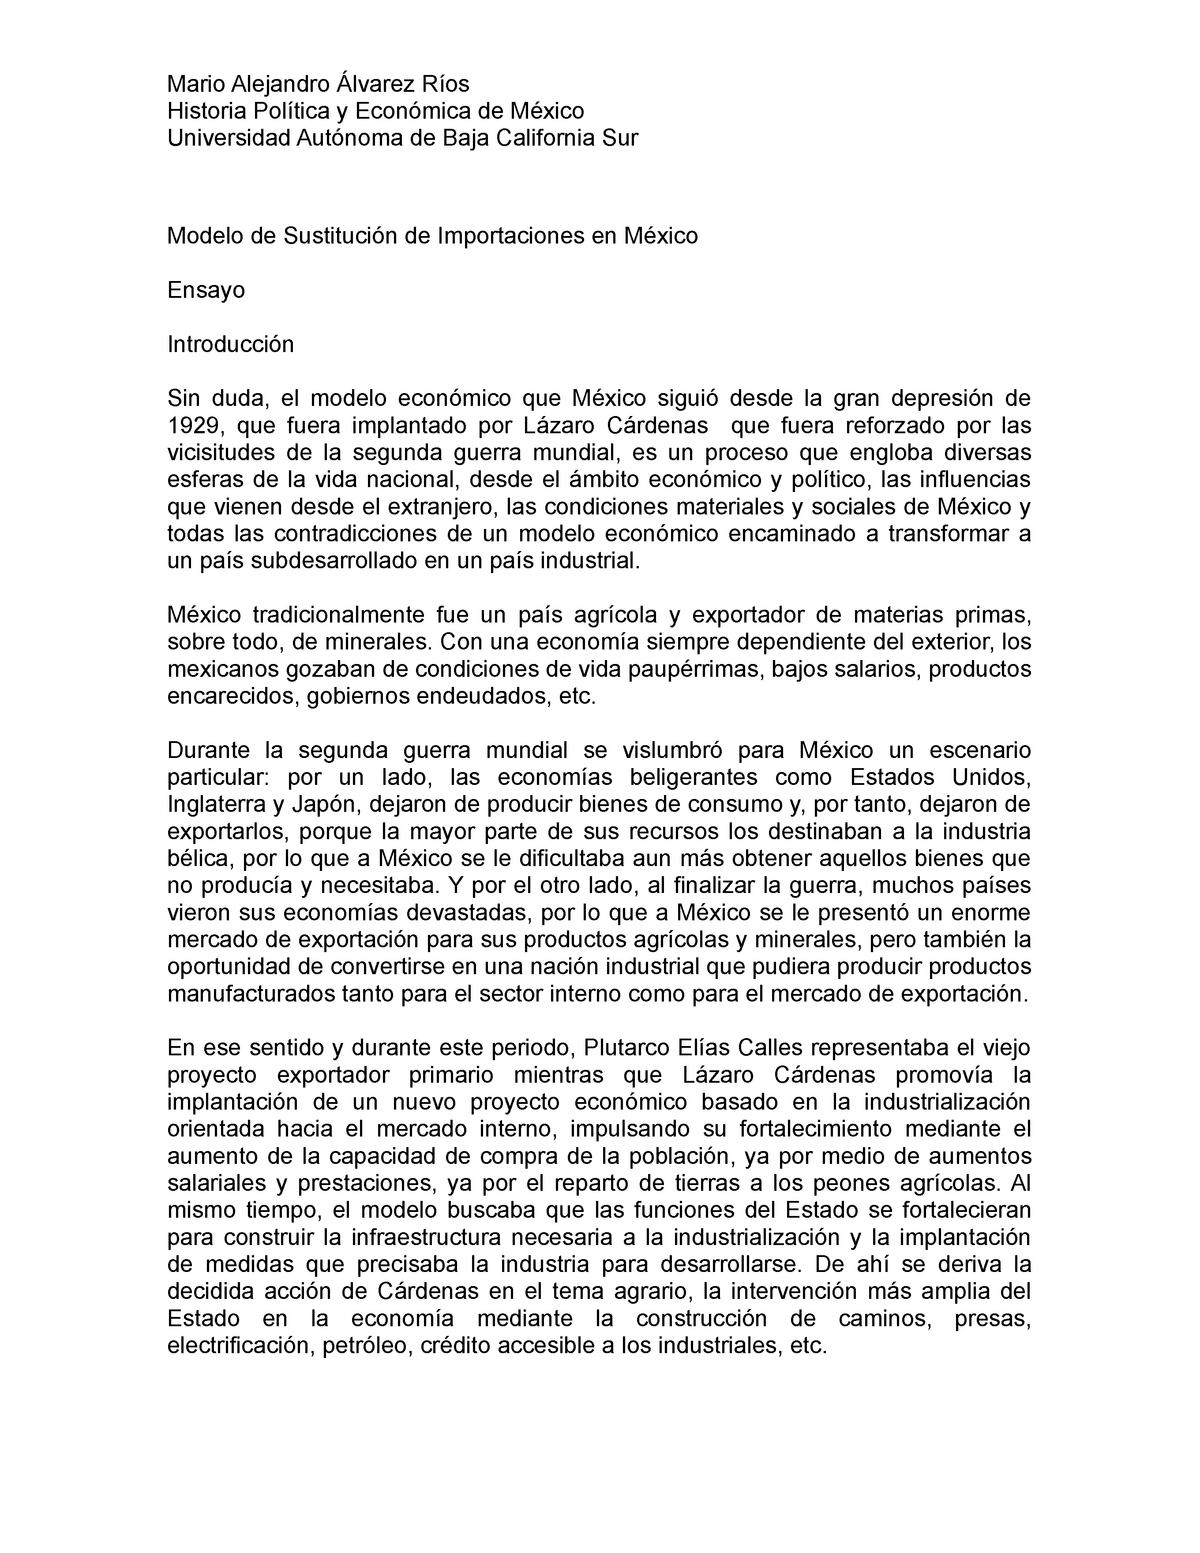 Modelo de industrialización por sustitución de importaciones - Mario  Alejandro Álvarez Ríos Historia - Studocu